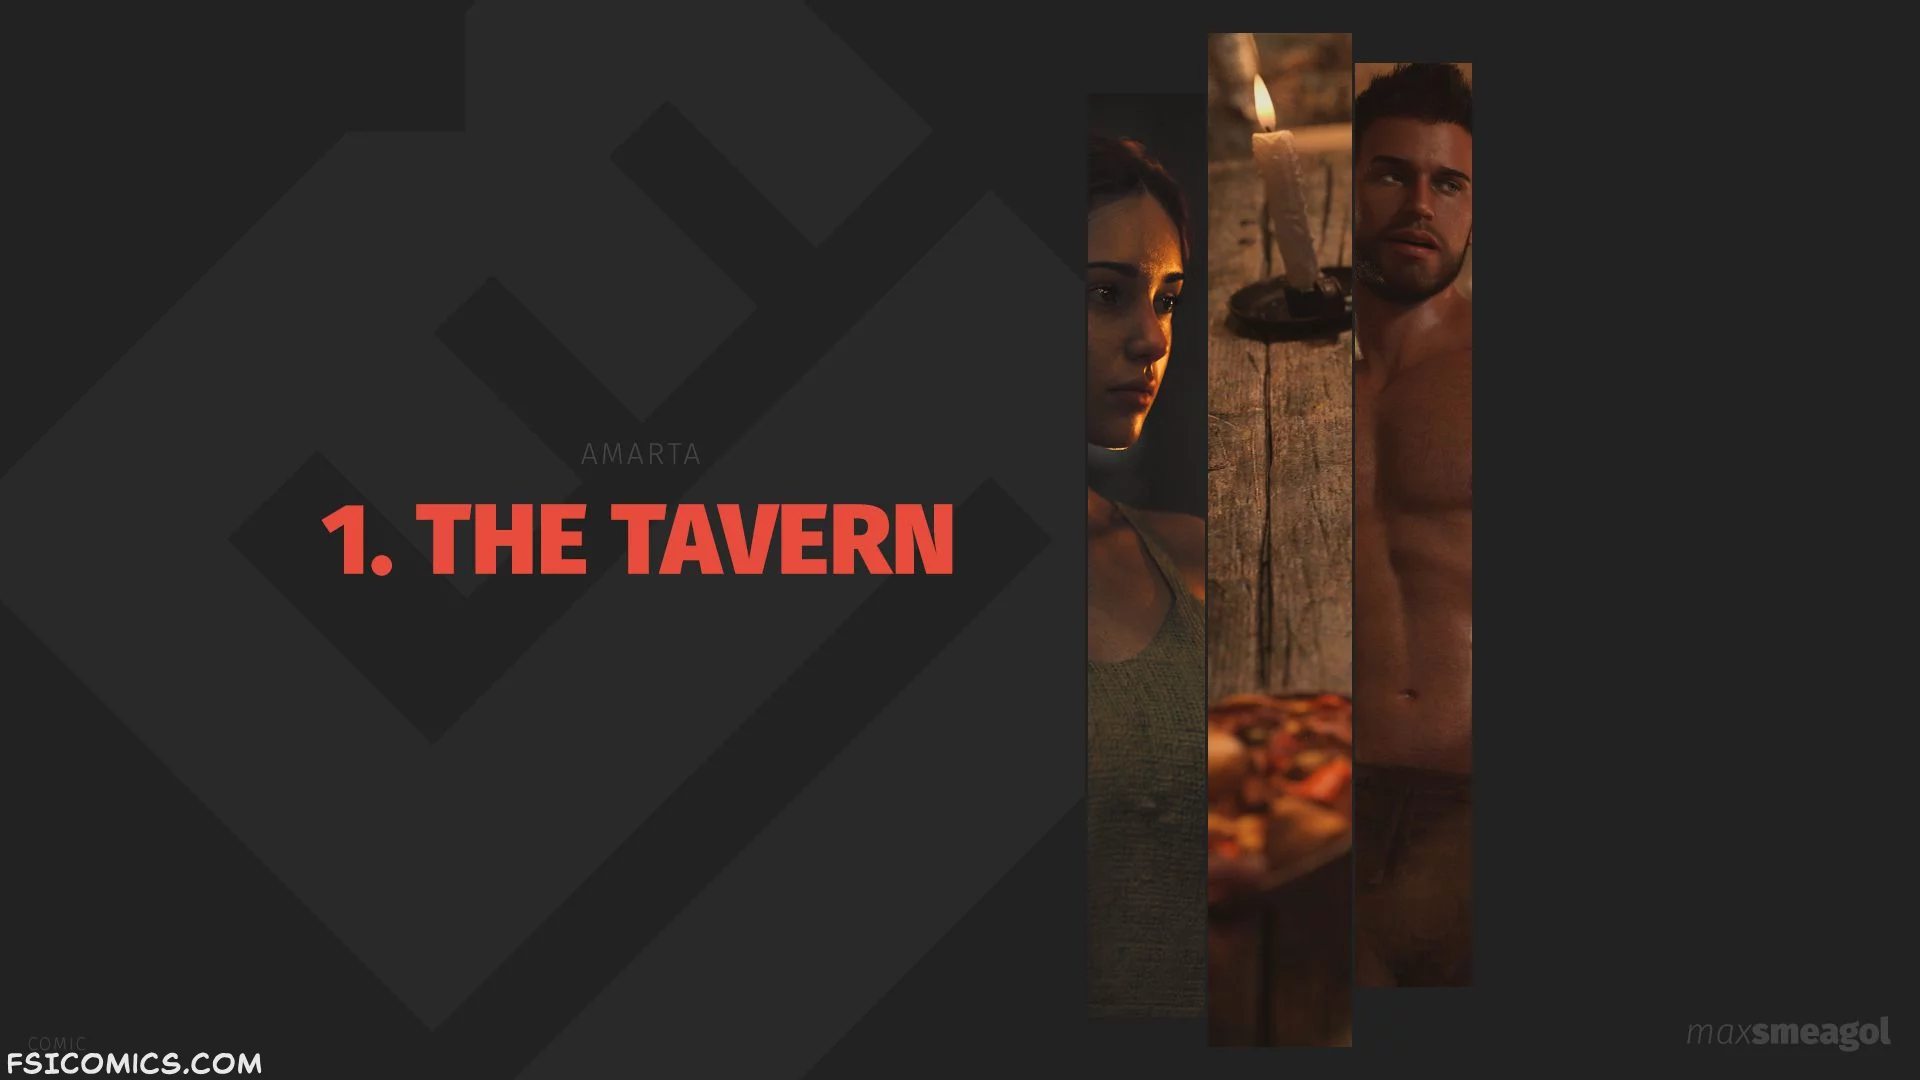 The Tavern Chapter 1 - MaxSmeagol - 15 - FSIComics